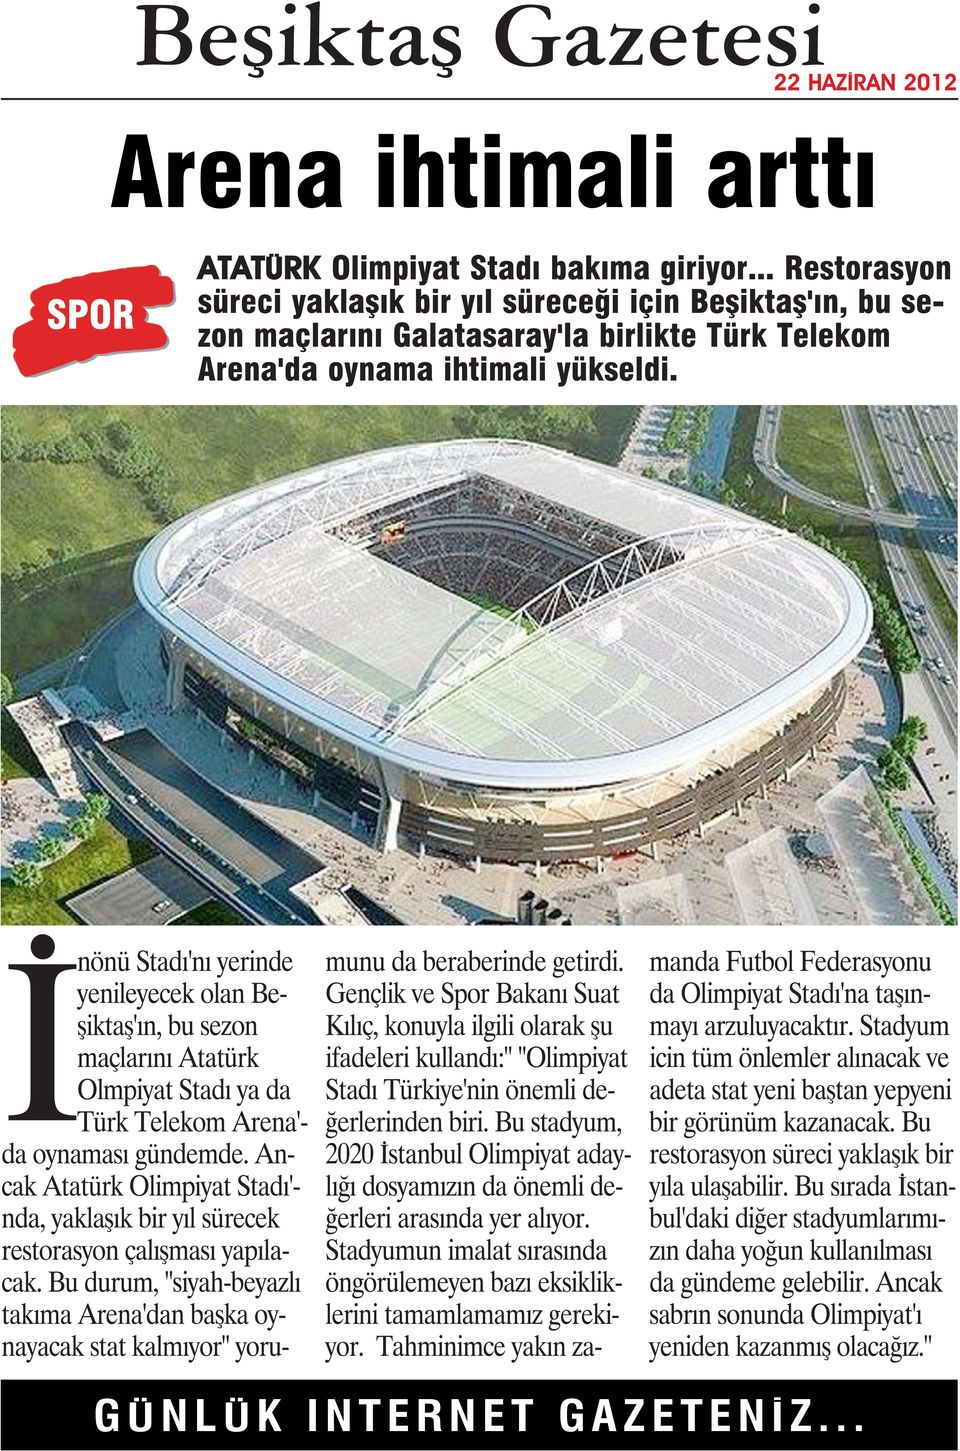 İnönü Stadı'nı yerinde yenileyecek olan Beşiktaş'ın, bu sezon maçlarını Atatürk Olmpiyat Stadı ya da Türk Telekom Arena'- da oynaması gündemde.